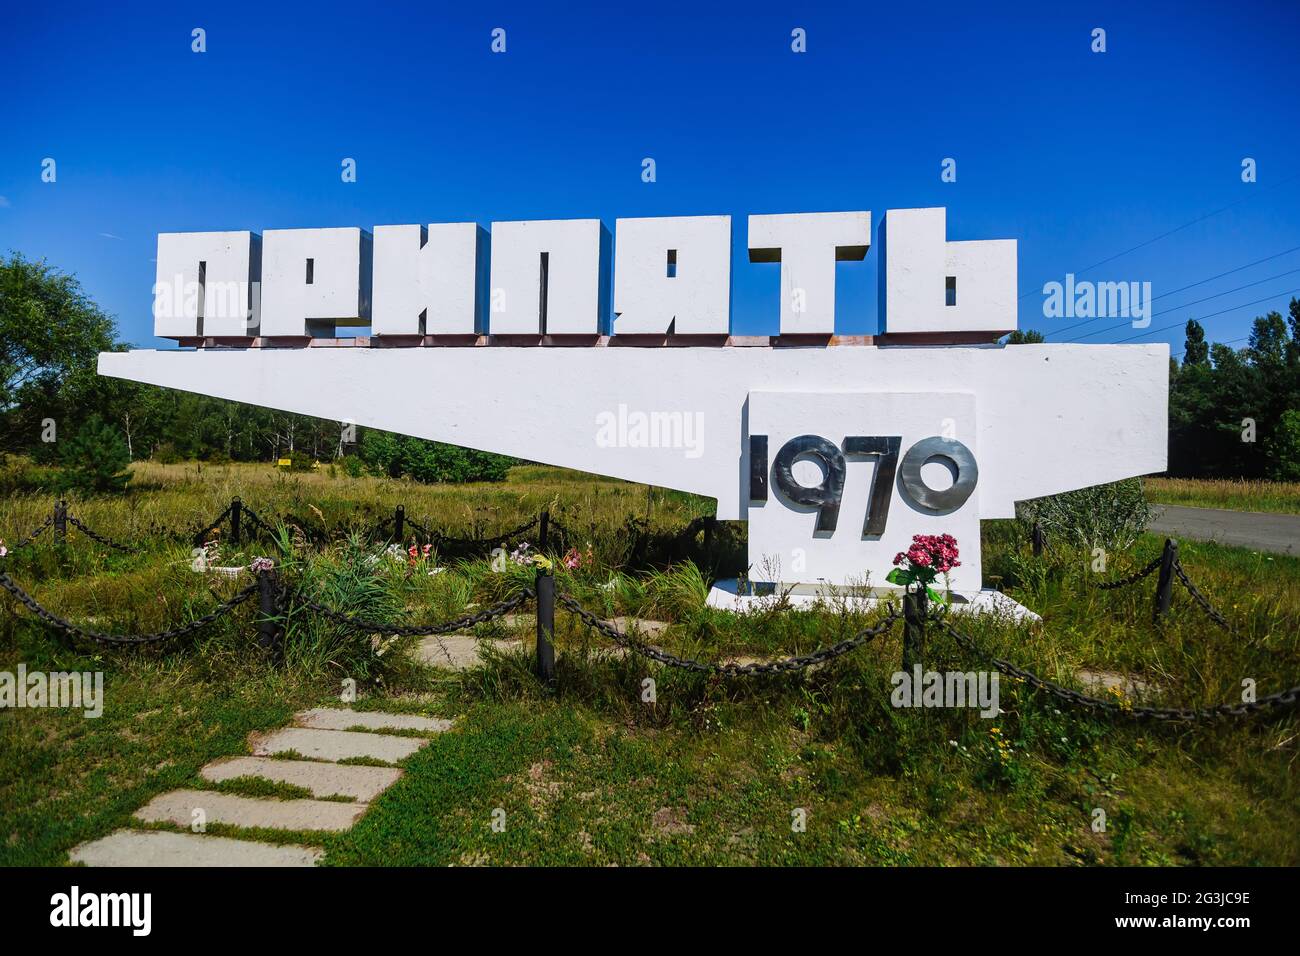 Pripyat, Tschernobyl-Ausschlusszone Ukraine. Stella mit Stadtnamen in Geisterstadt Pripyat Chornobyl Zone, Strahlung, nukleare Katastrofe Stockfoto